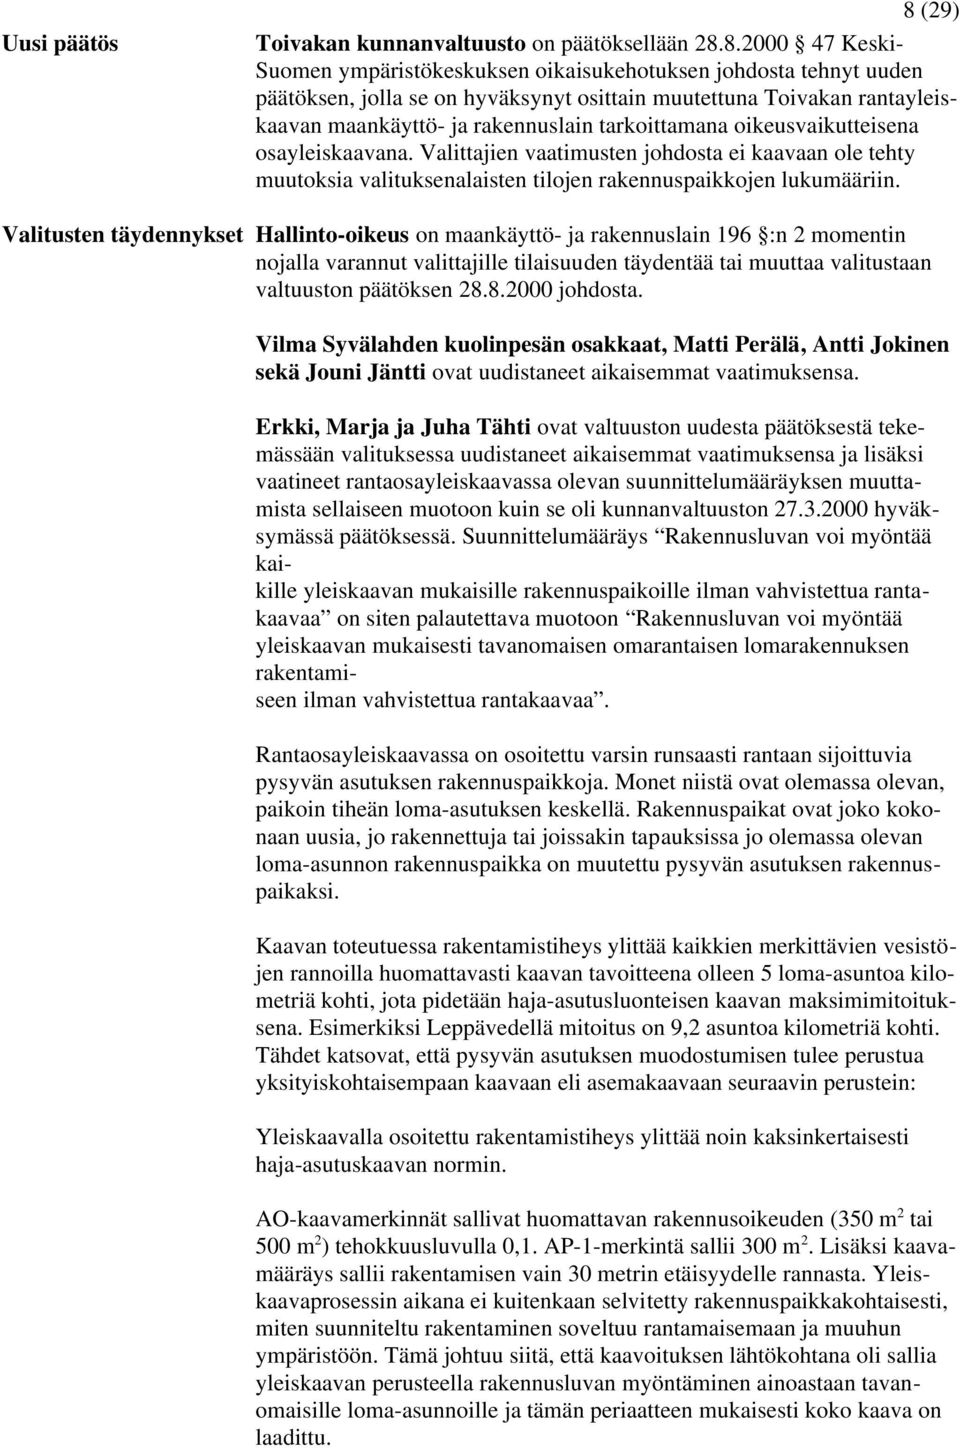 8.2000 47 Keski- Suomen ympäristökeskuksen oikaisukehotuksen johdosta tehnyt uuden päätöksen, jolla se on hyväksynyt osittain muutettuna Toivakan rantayleiskaavan maankäyttö- ja rakennuslain